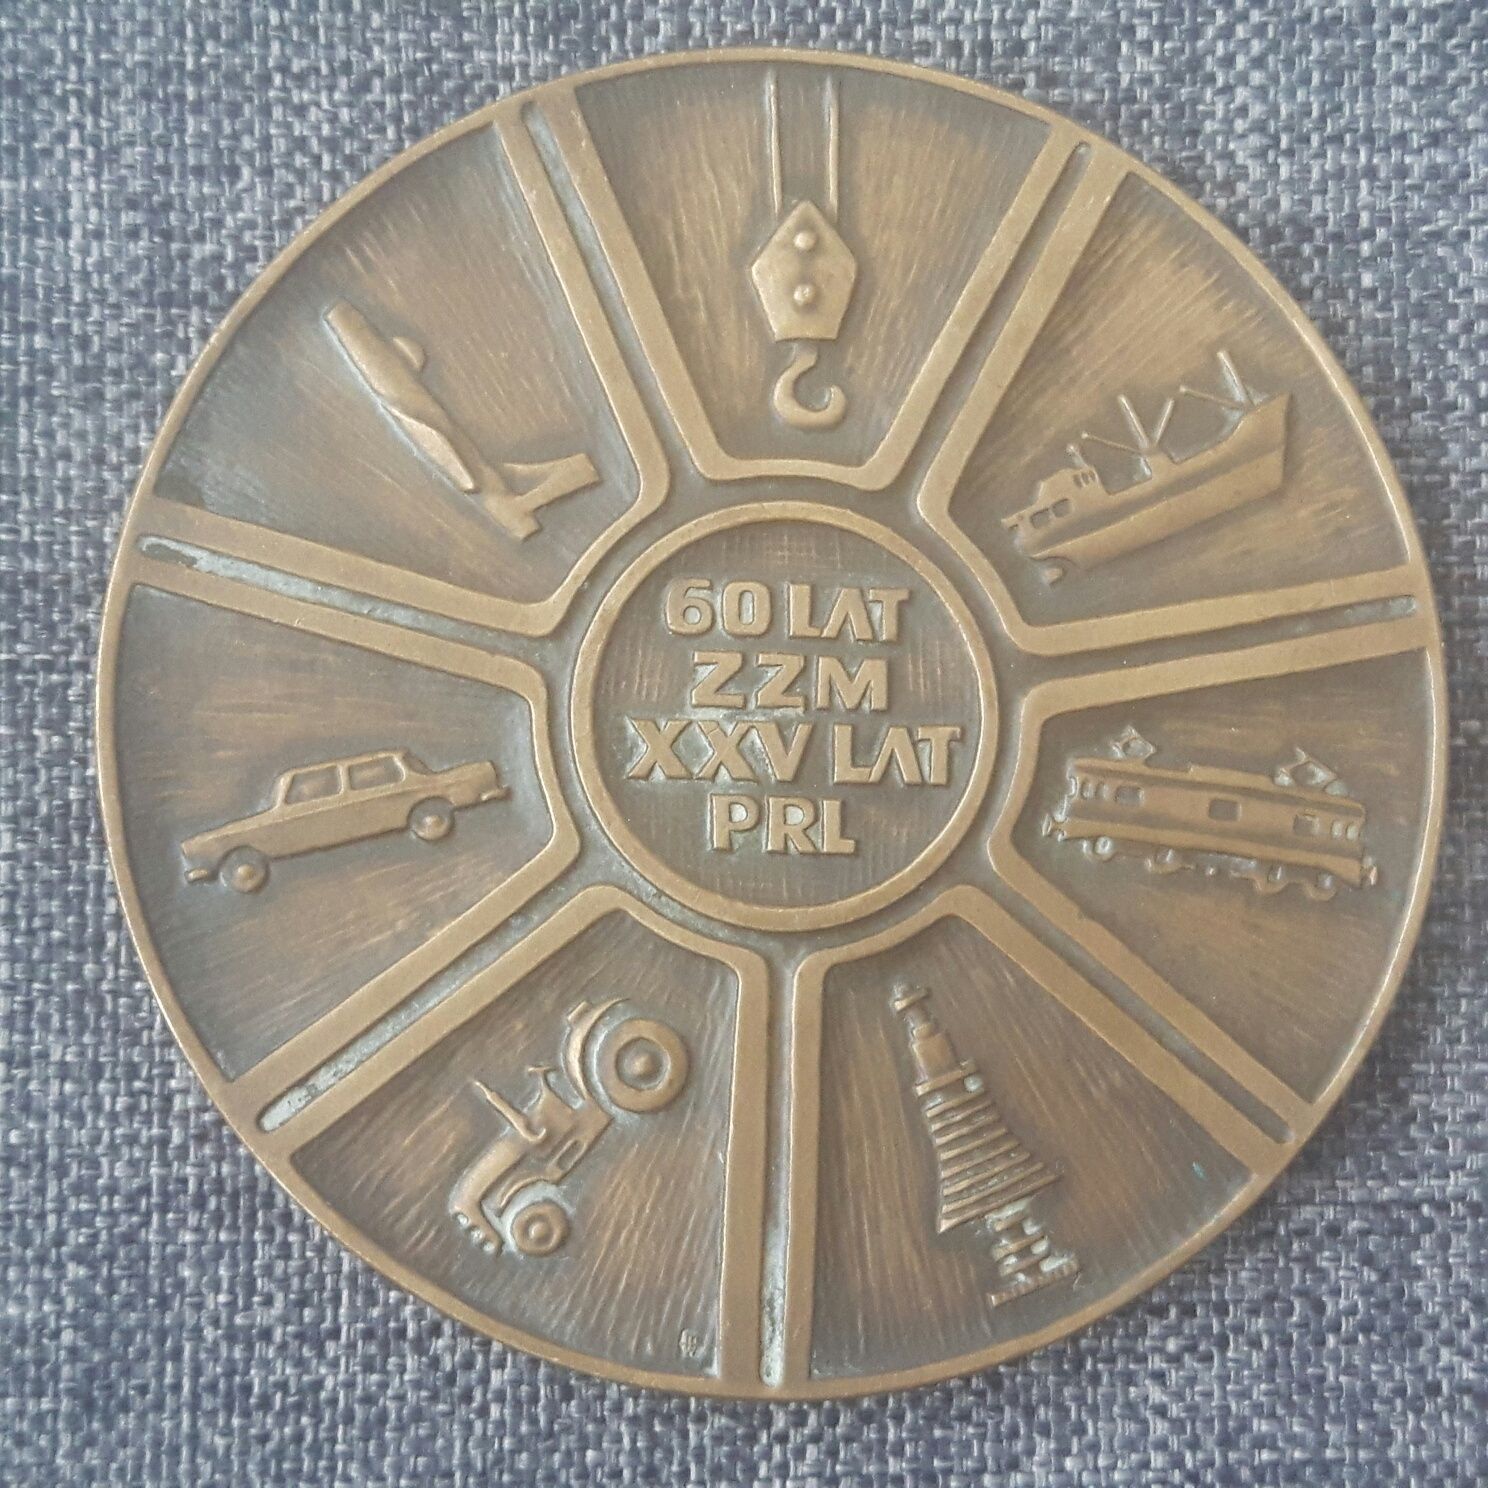 Medal 60 lat ZZM, XXV lat PRL